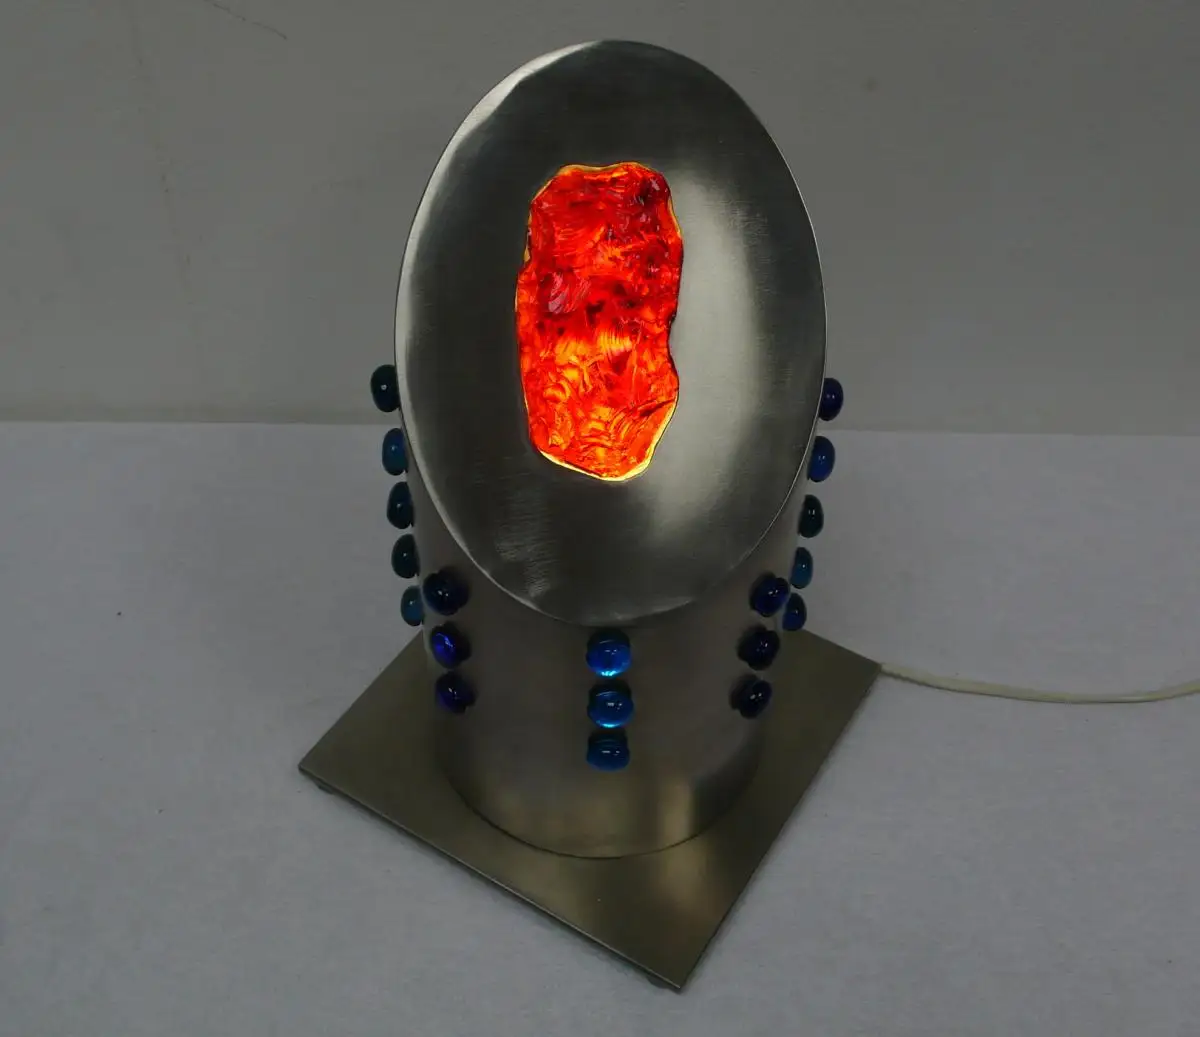 Atomic Space Age Tischlampe Bodenlampe Edelstahl rund drehbar, mit Rotem Kristallglas 3